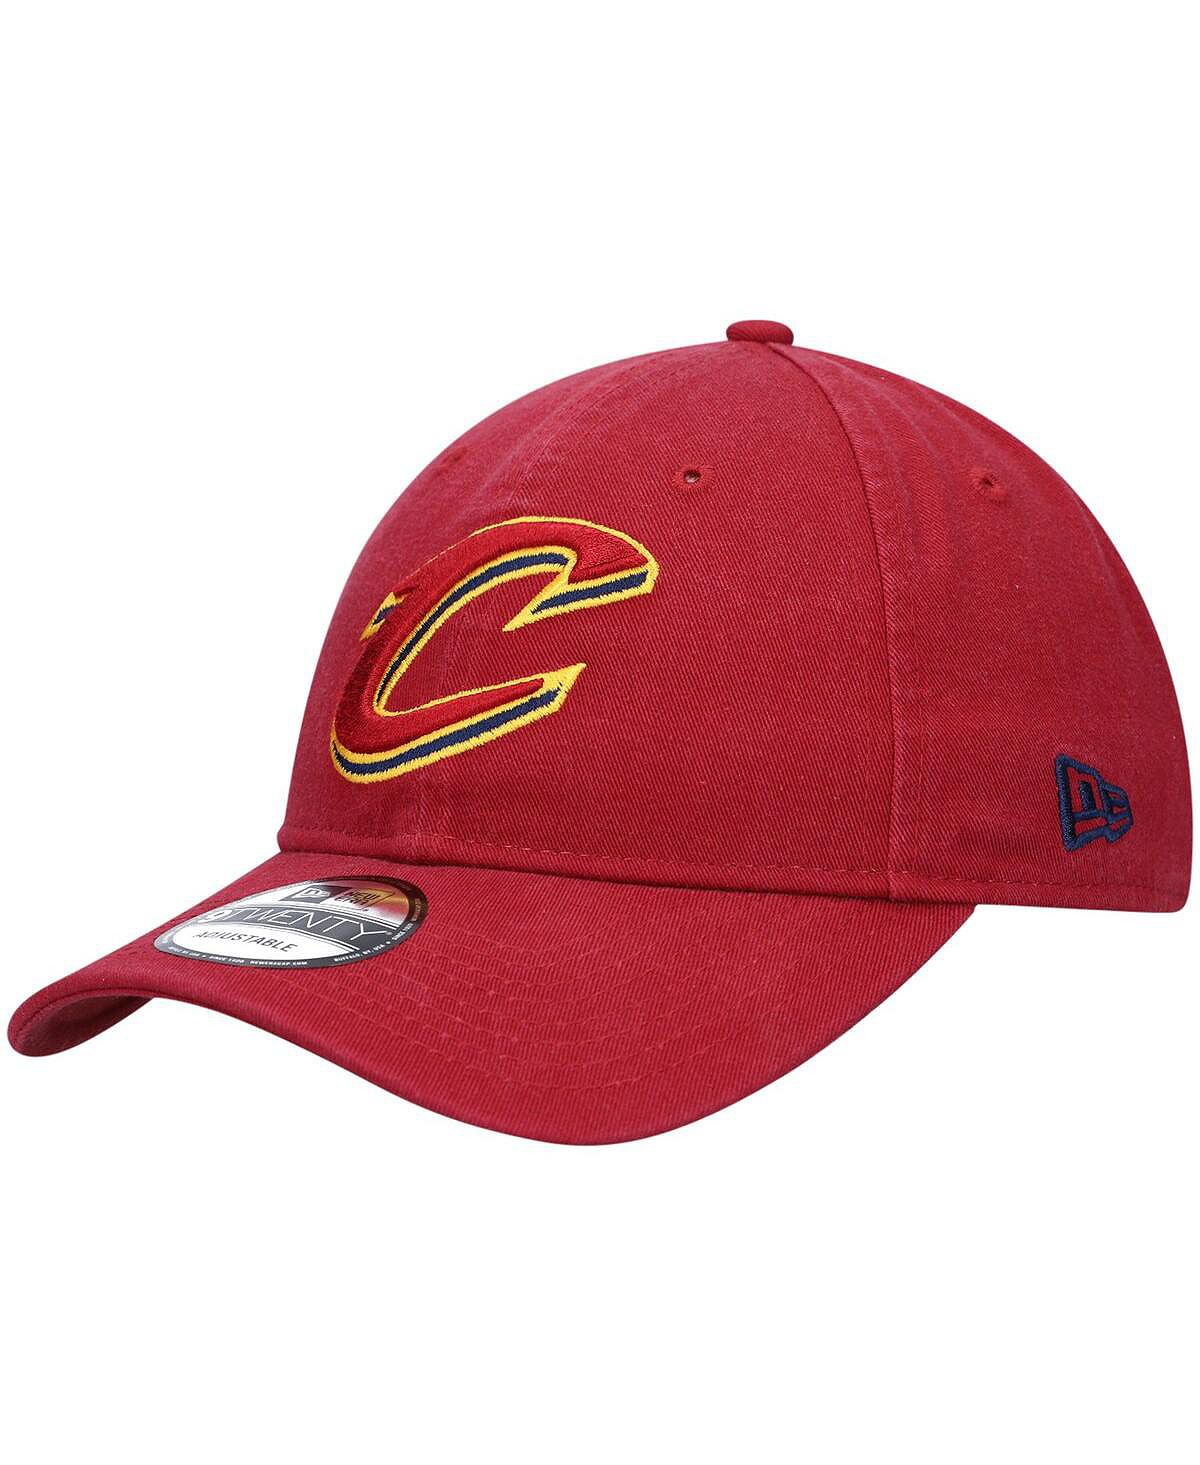 Мужская кепка с официальным логотипом Wine Cleveland Cavaliers 9TWENTY Team, регулируемый цвет New Era